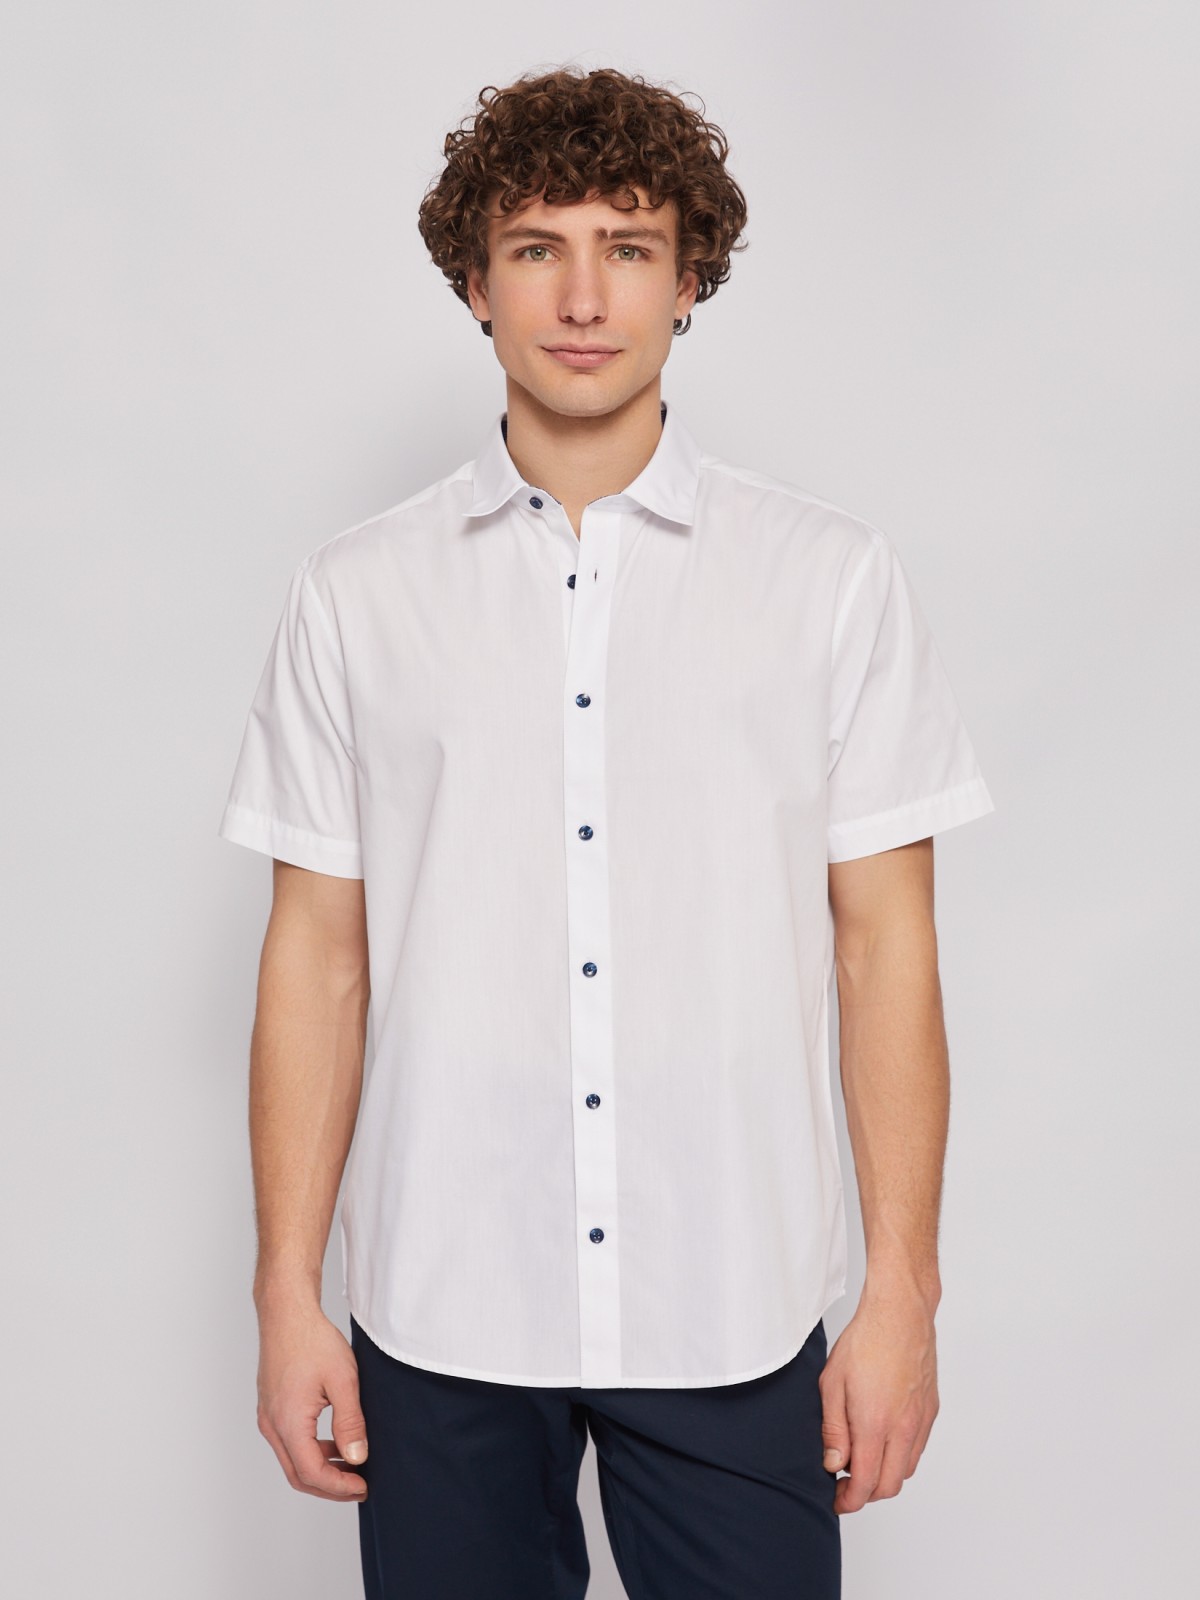 Офисная рубашка с коротким рукавом zolla 014222259012, цвет белый, размер S